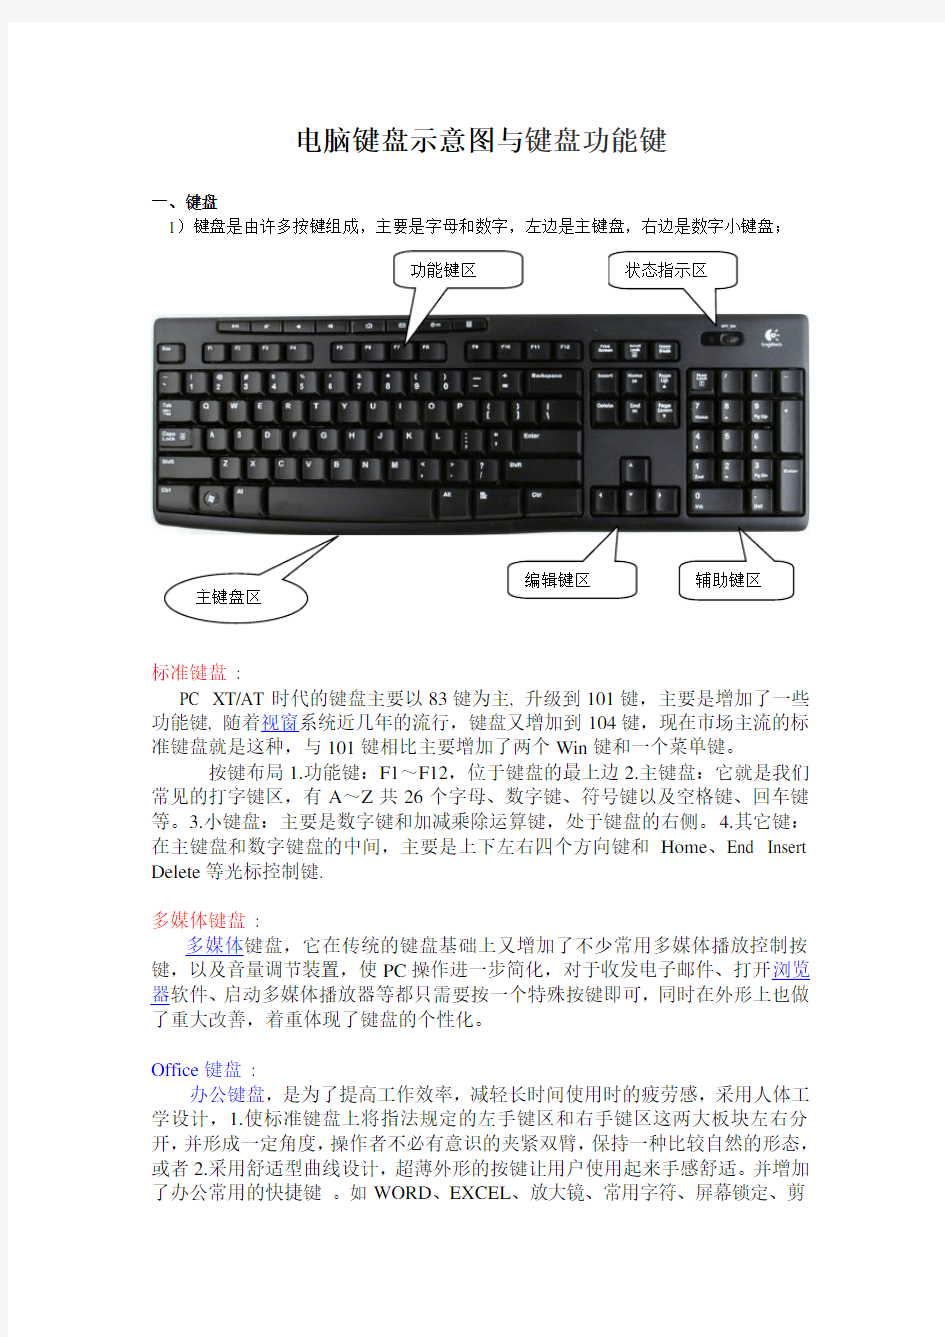 电脑键盘示意图与键盘功能键[1]